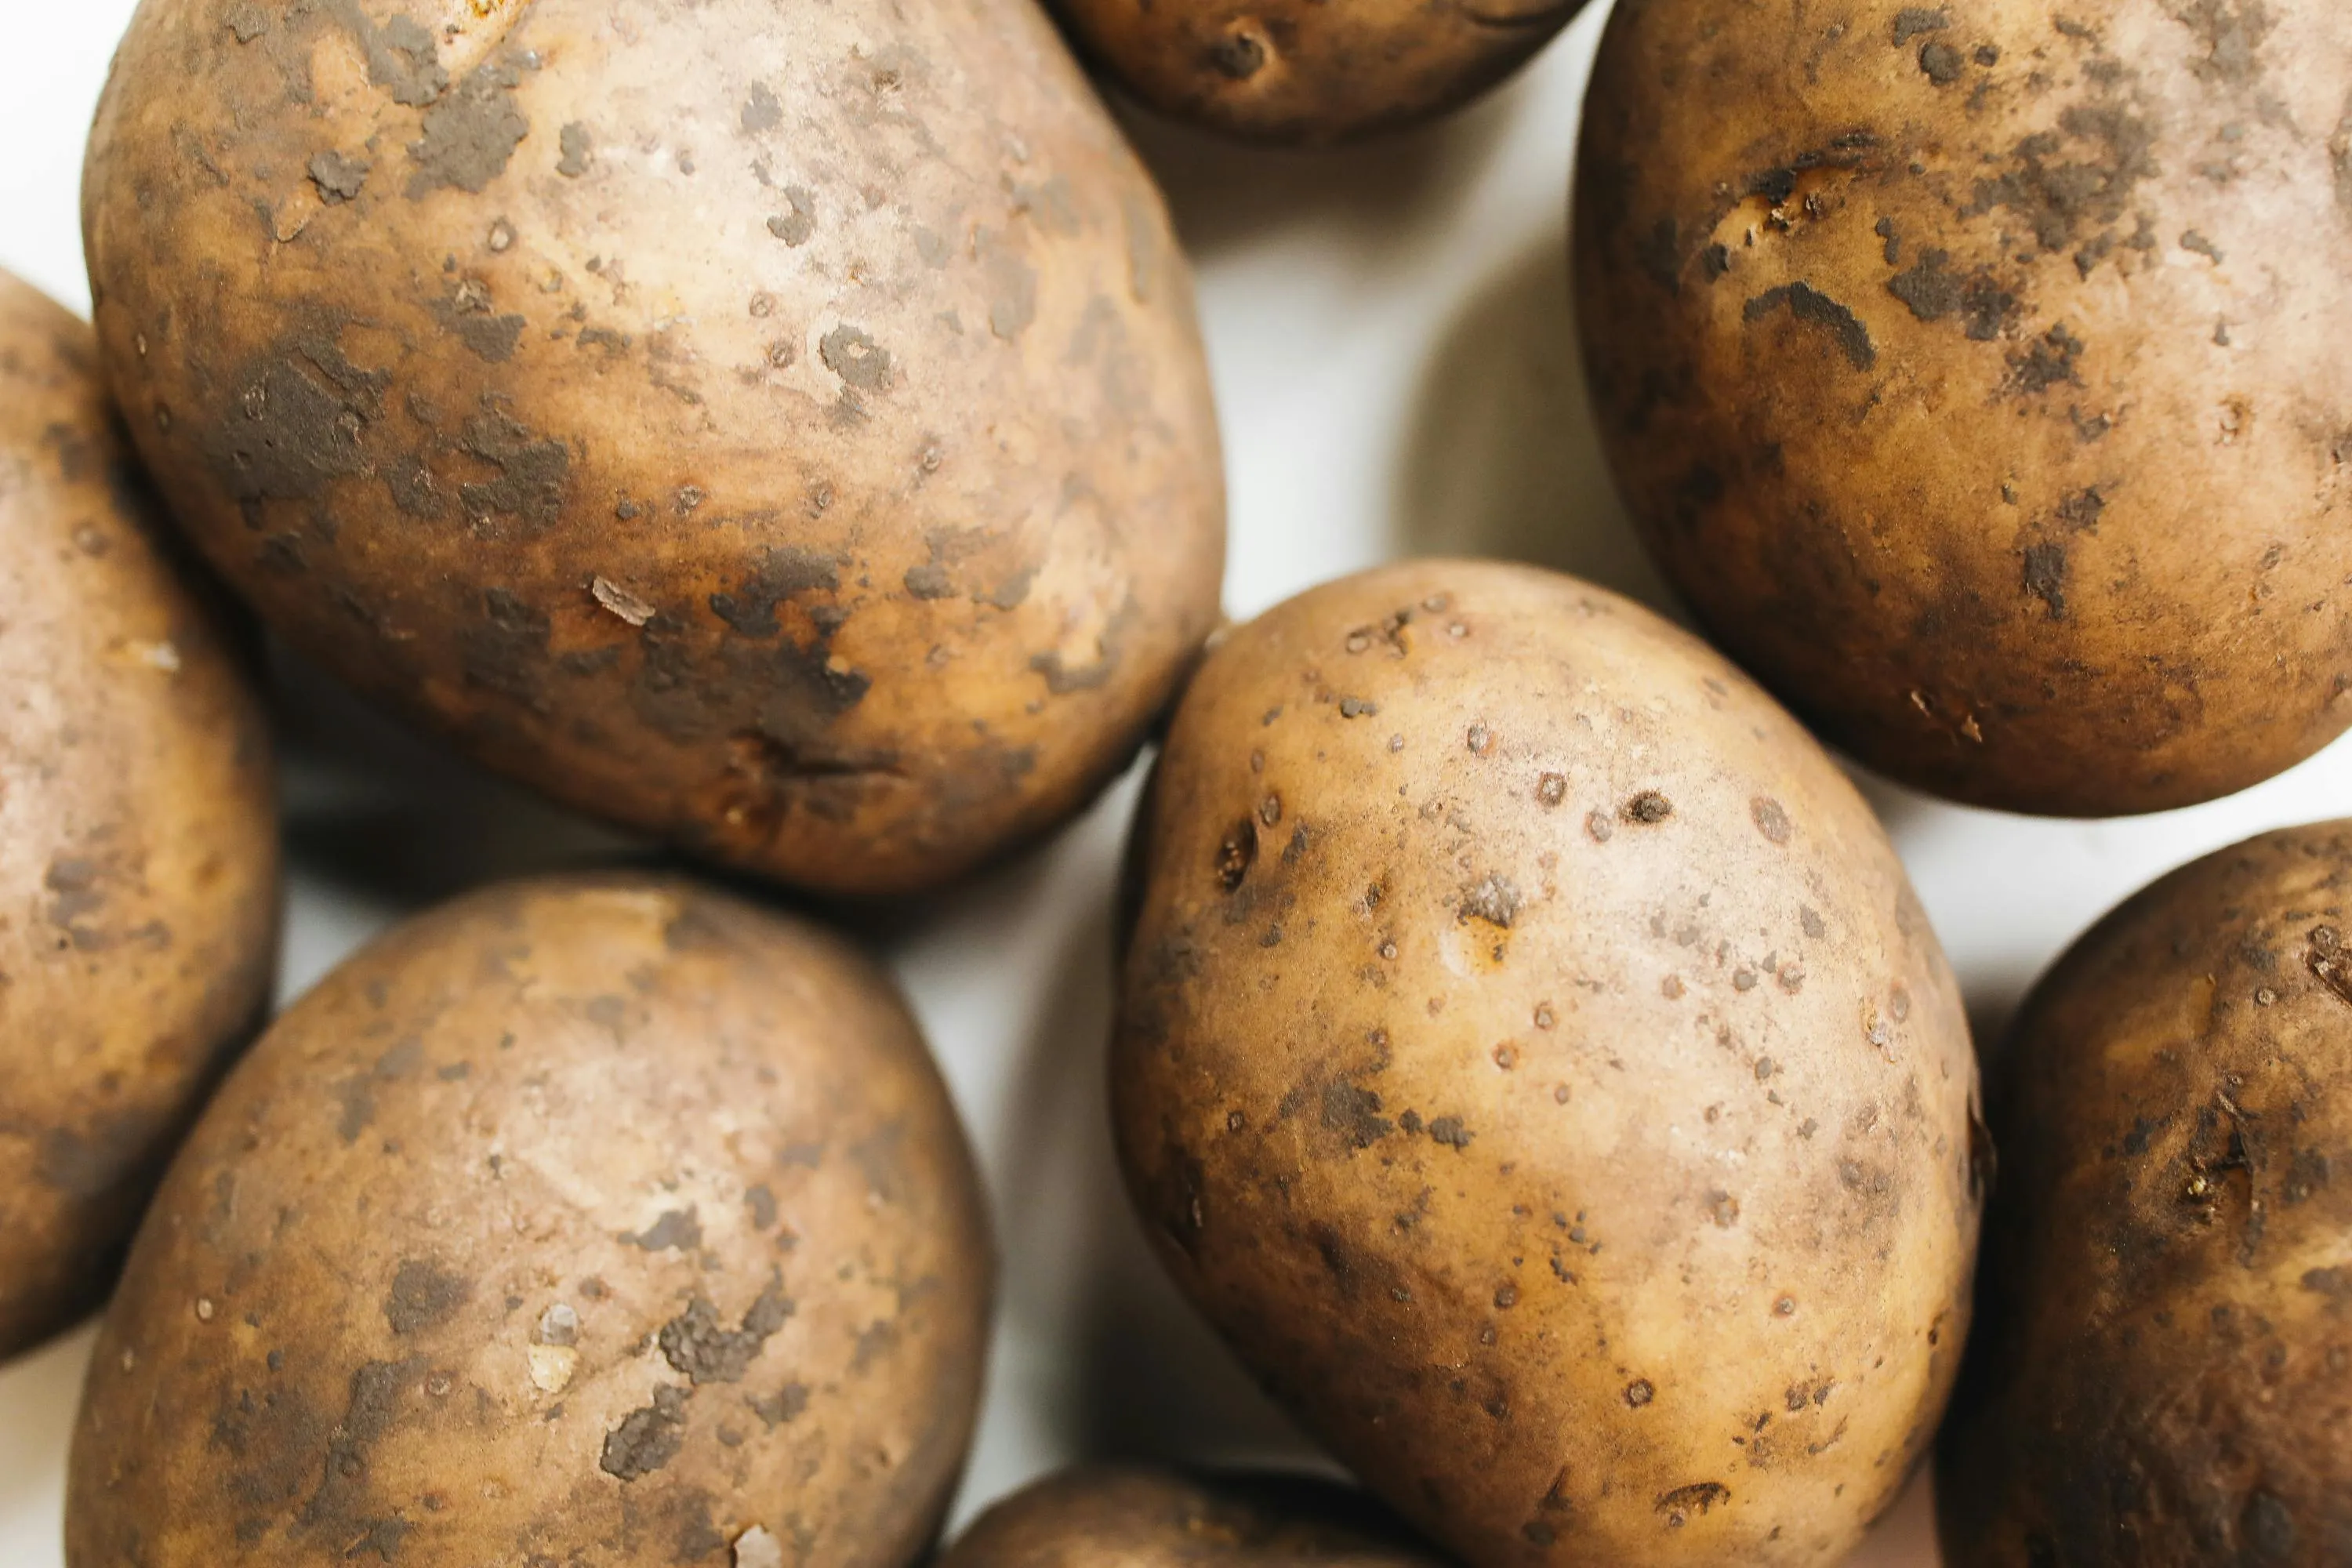 Підживлювати картоплю варто рідким та сухим попелом